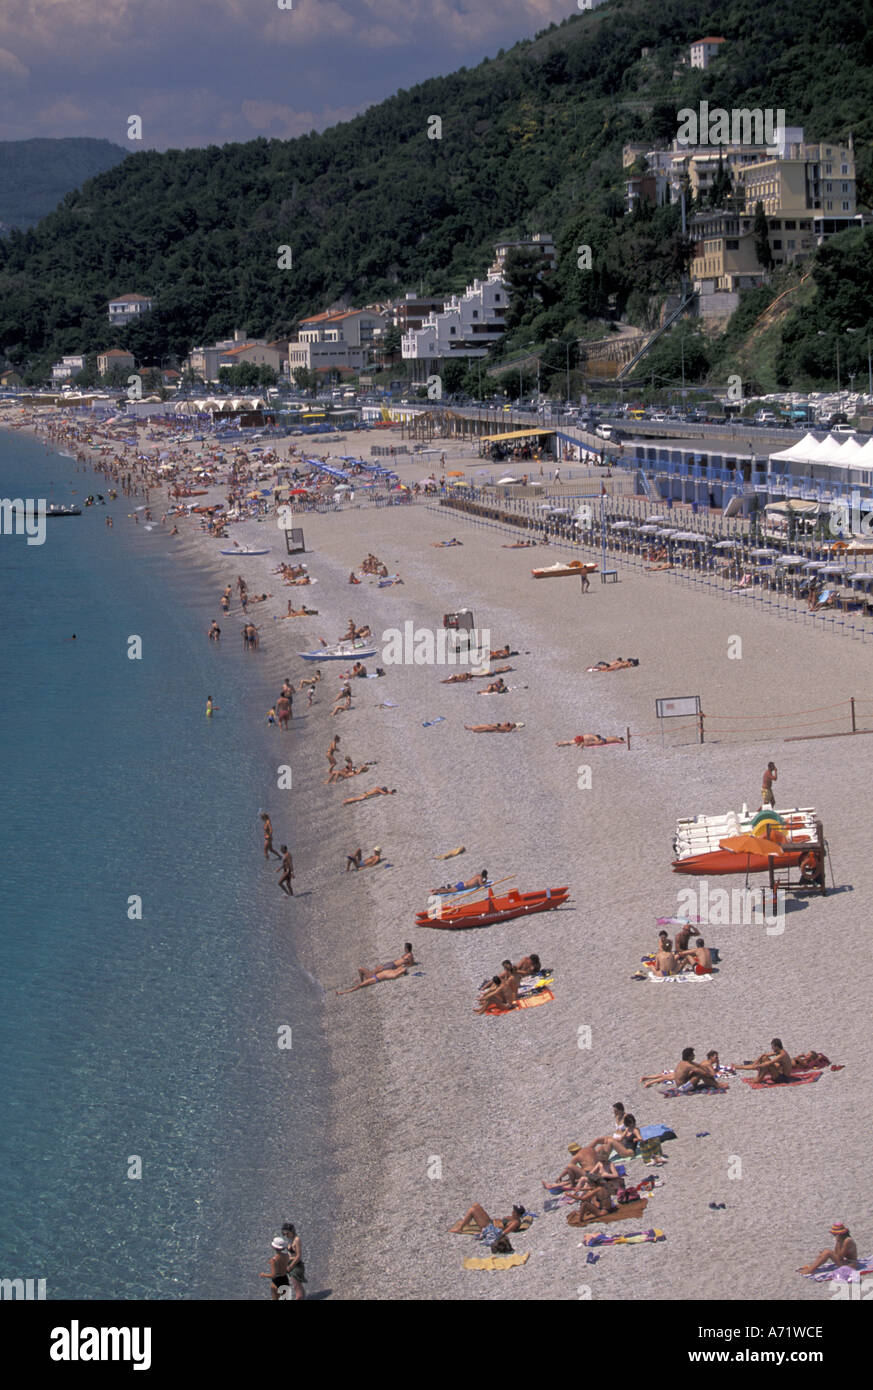 Europe, Italy, Liguria, Spotorno, Riviera di Ponente, Town and beach view Stock Photo